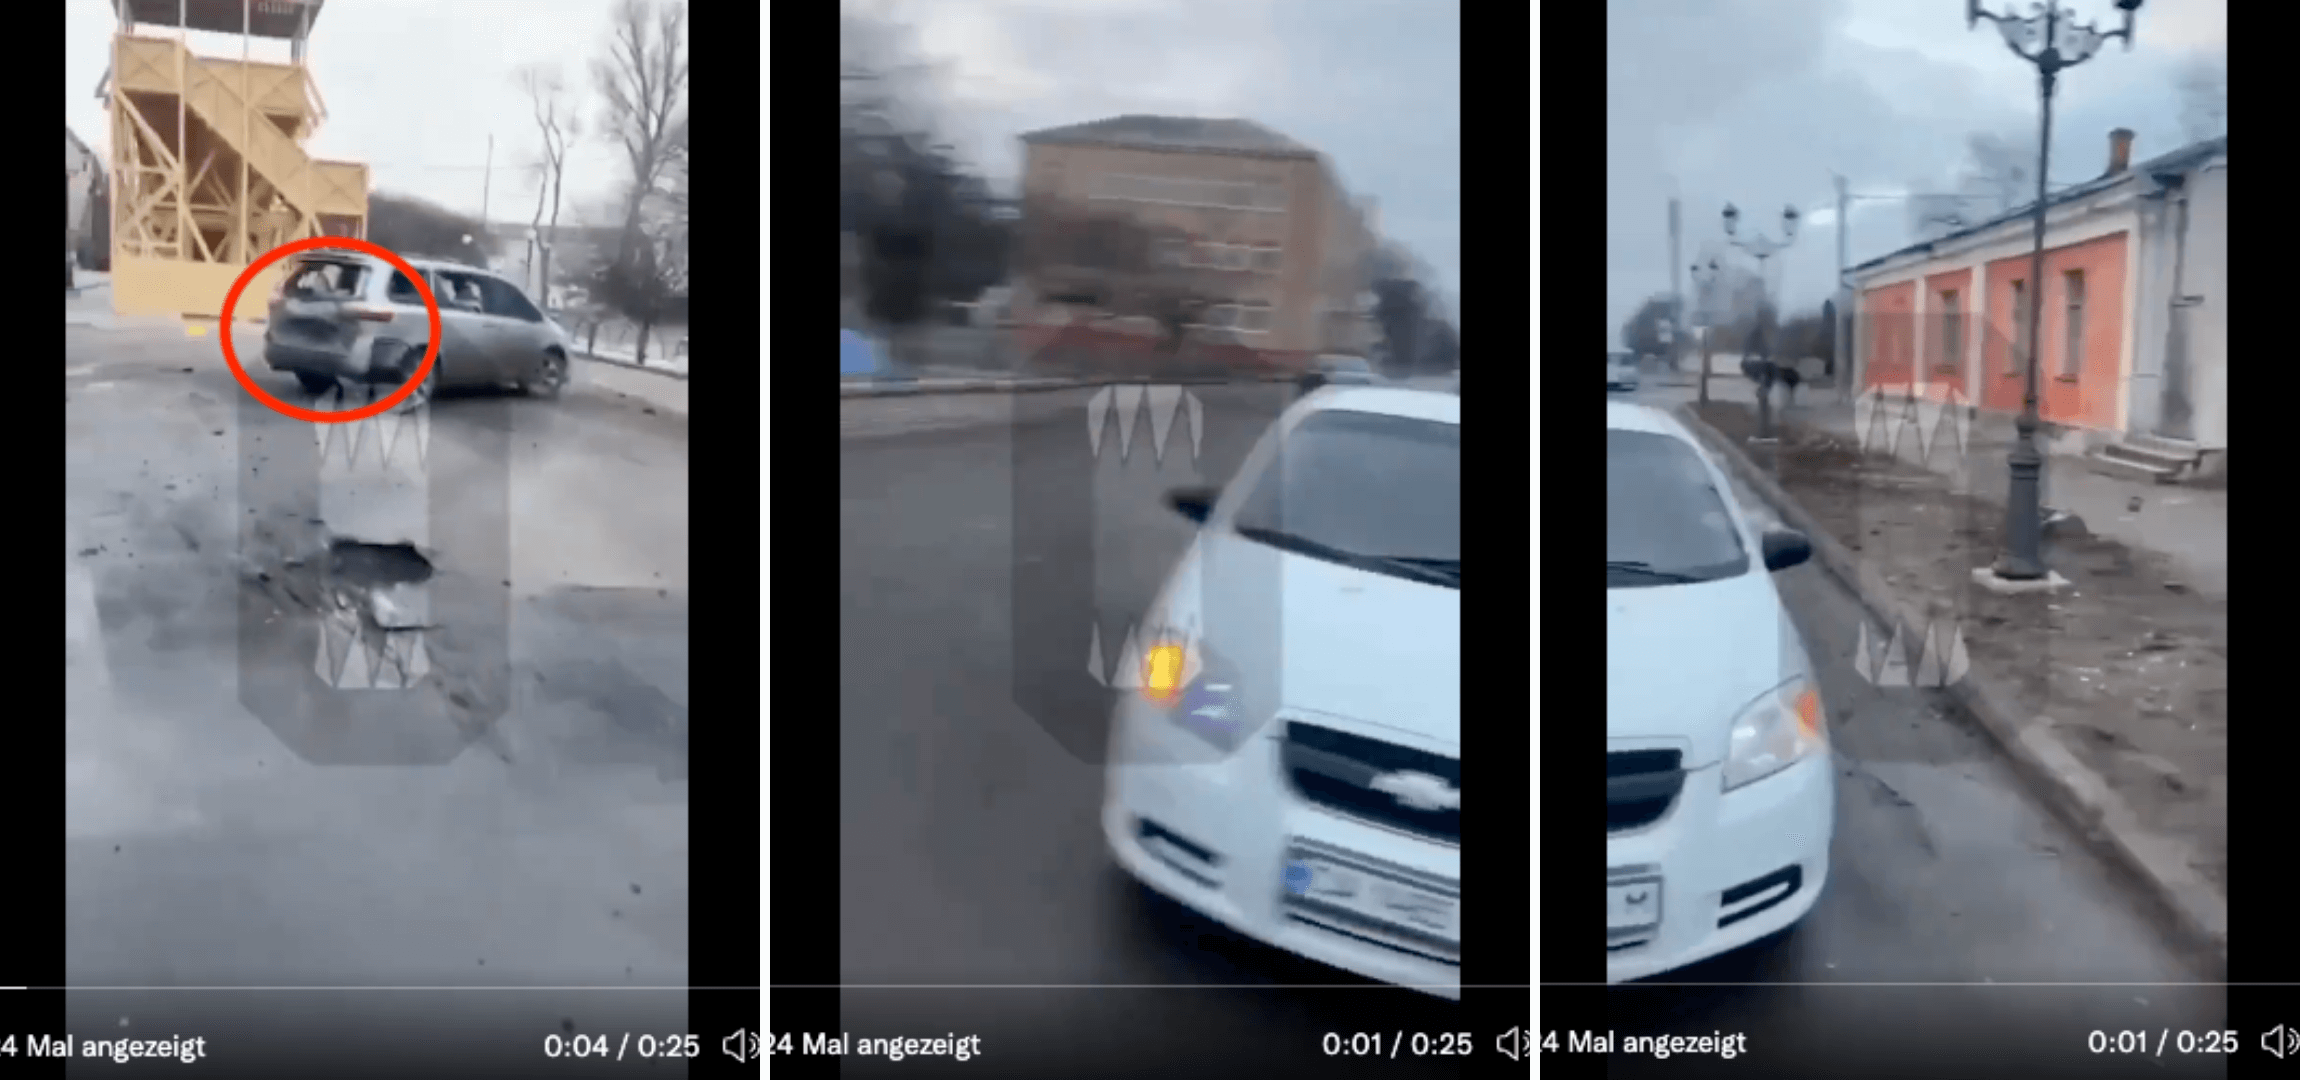 Die Collage zeigt verschiedene Ausschnitte eines Handy-Videos, das eine Person vor Ort nach dem Einschlag in Uman gefilmt hat. Rot markiert ist das beschädigte Auto. (Quelle: Twitter; Screenshots und Collage: CORRECTIV.Faktencheck)